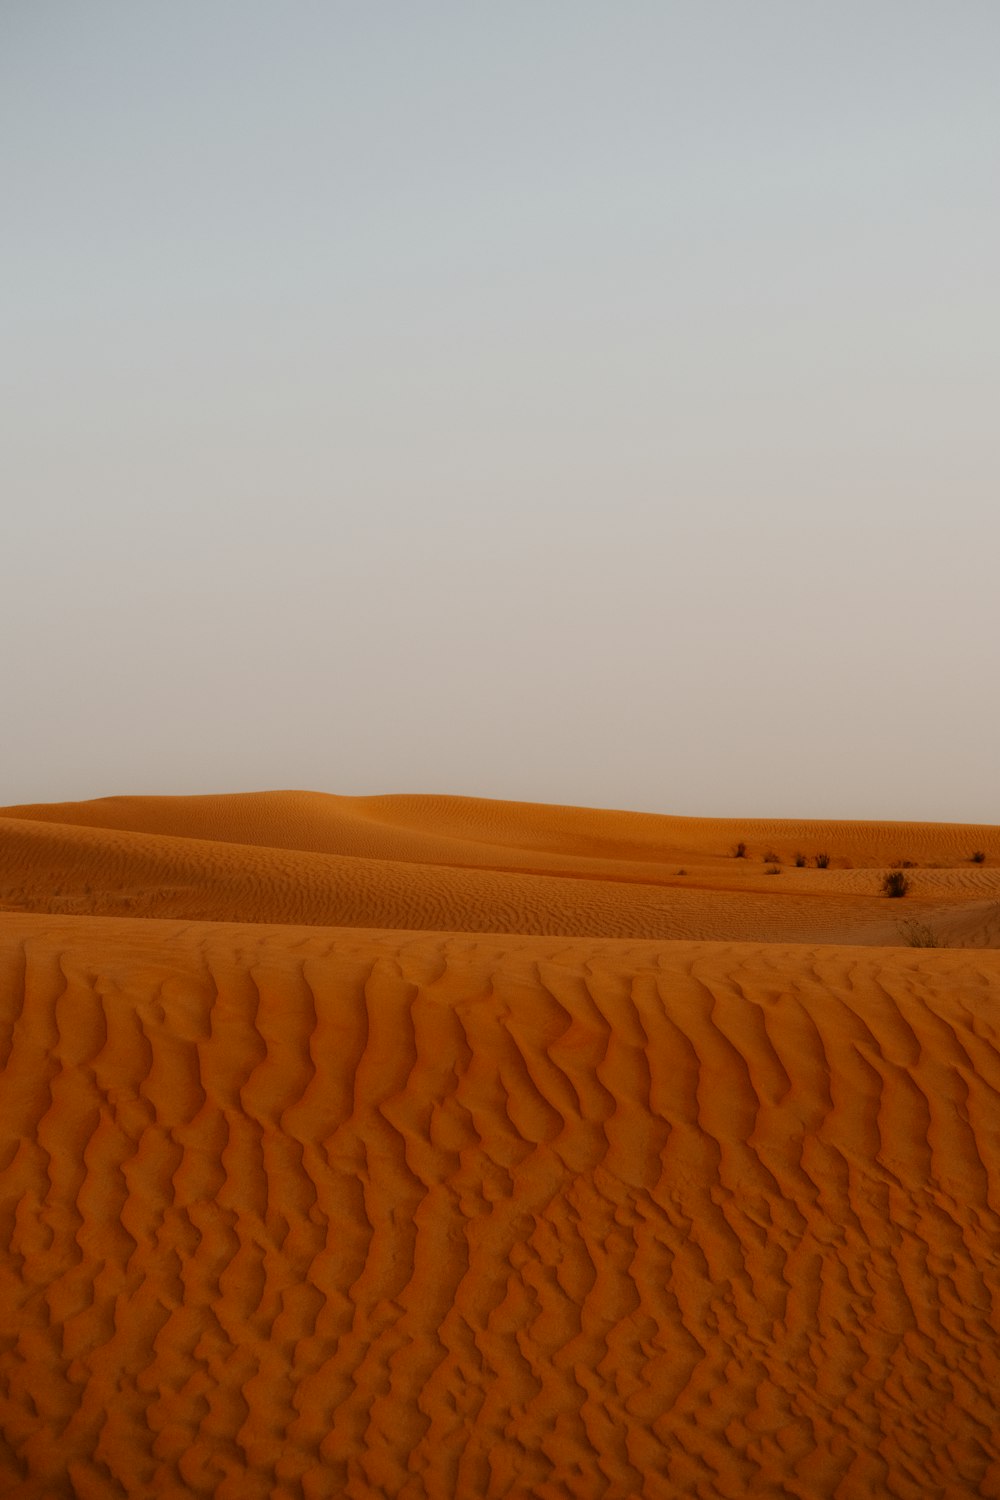 Ein einsamer Baum mitten in der Wüste